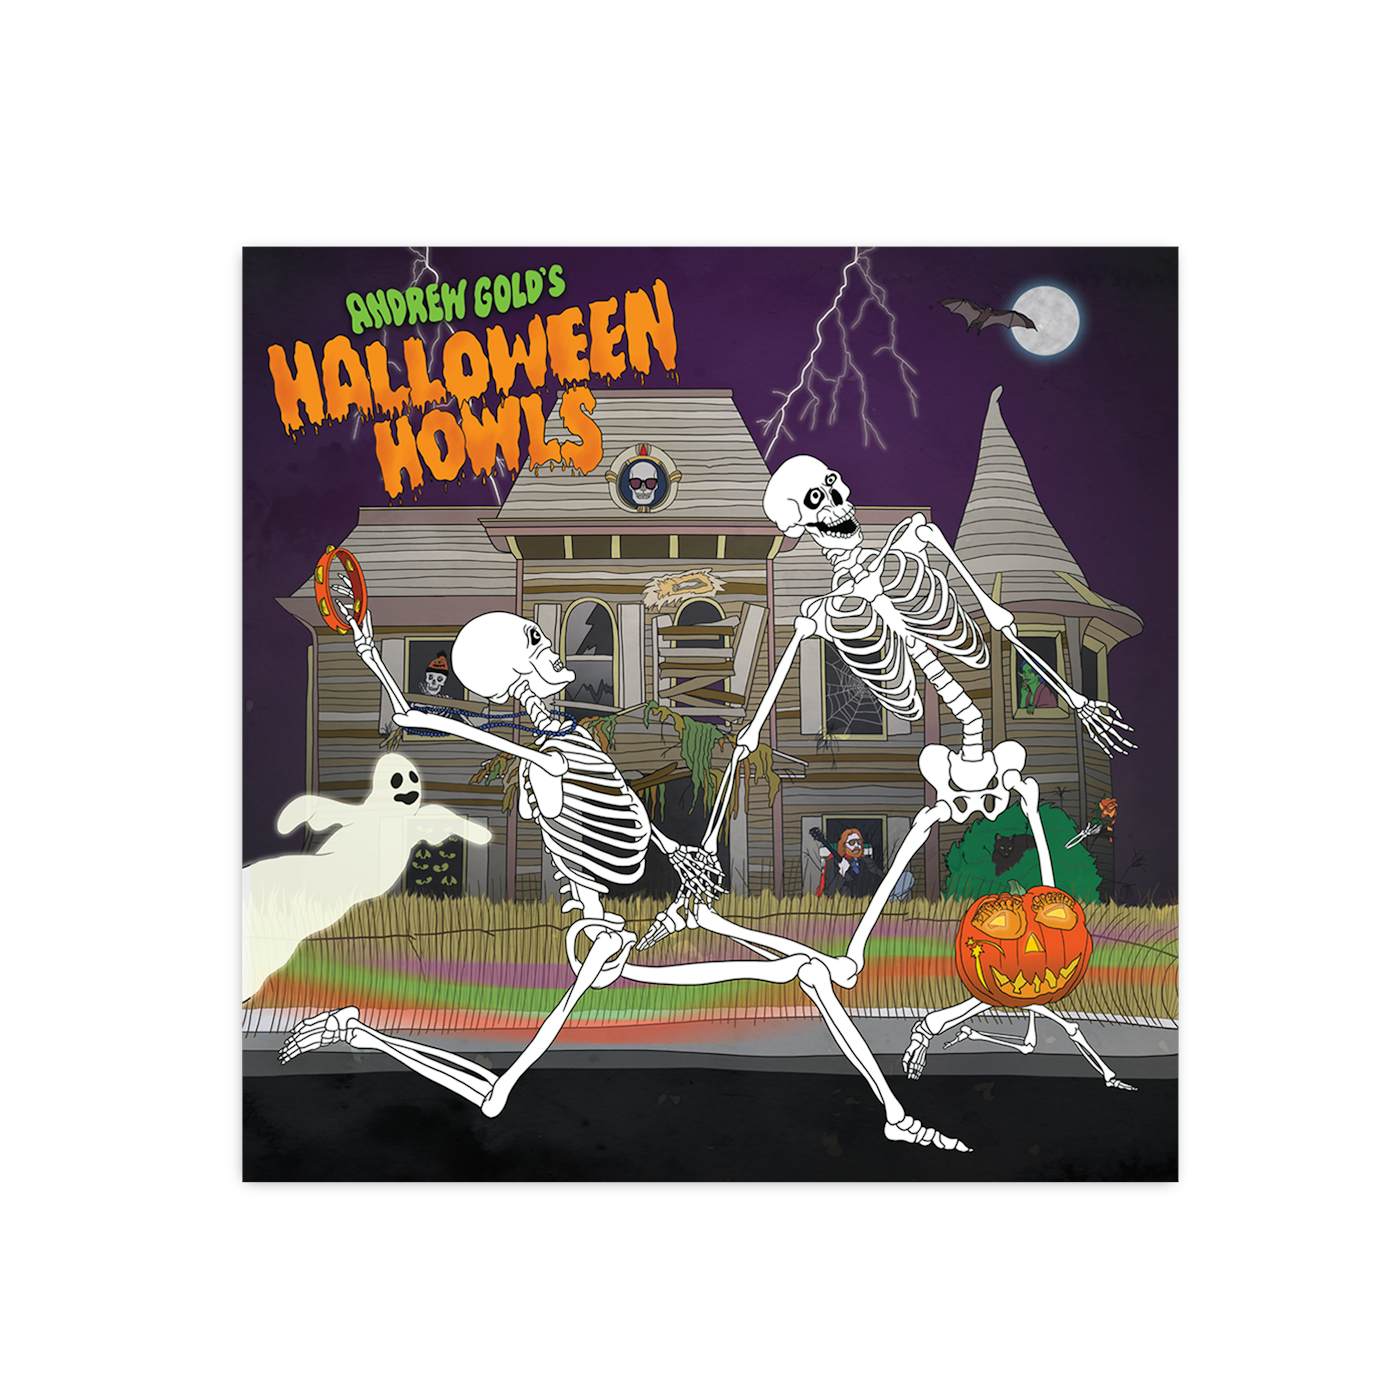 Andrew MrWindy Willeitner on X: 🎃Happy Halloween!👻 Spooky